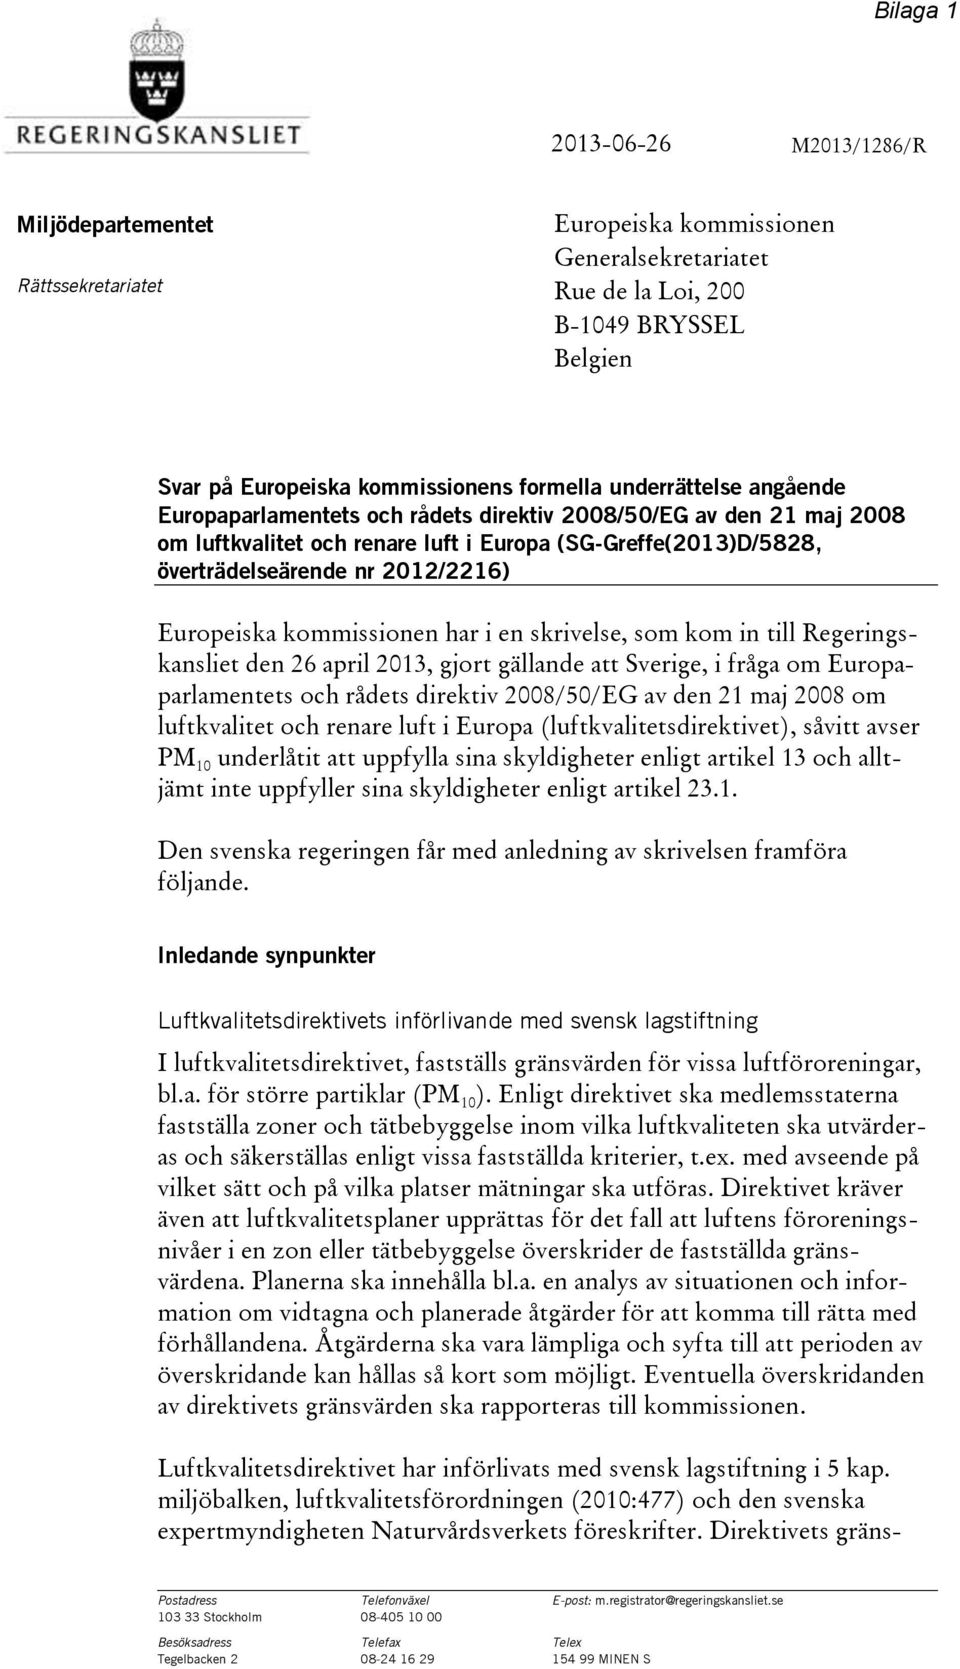 Europeiska kommissionen har i en skrivelse, som kom in till Regeringskansliet den 26 april 2013, gjort gällande att Sverige, i fråga om Europaparlamentets och rådets direktiv 2008/50/EG av den 21 maj